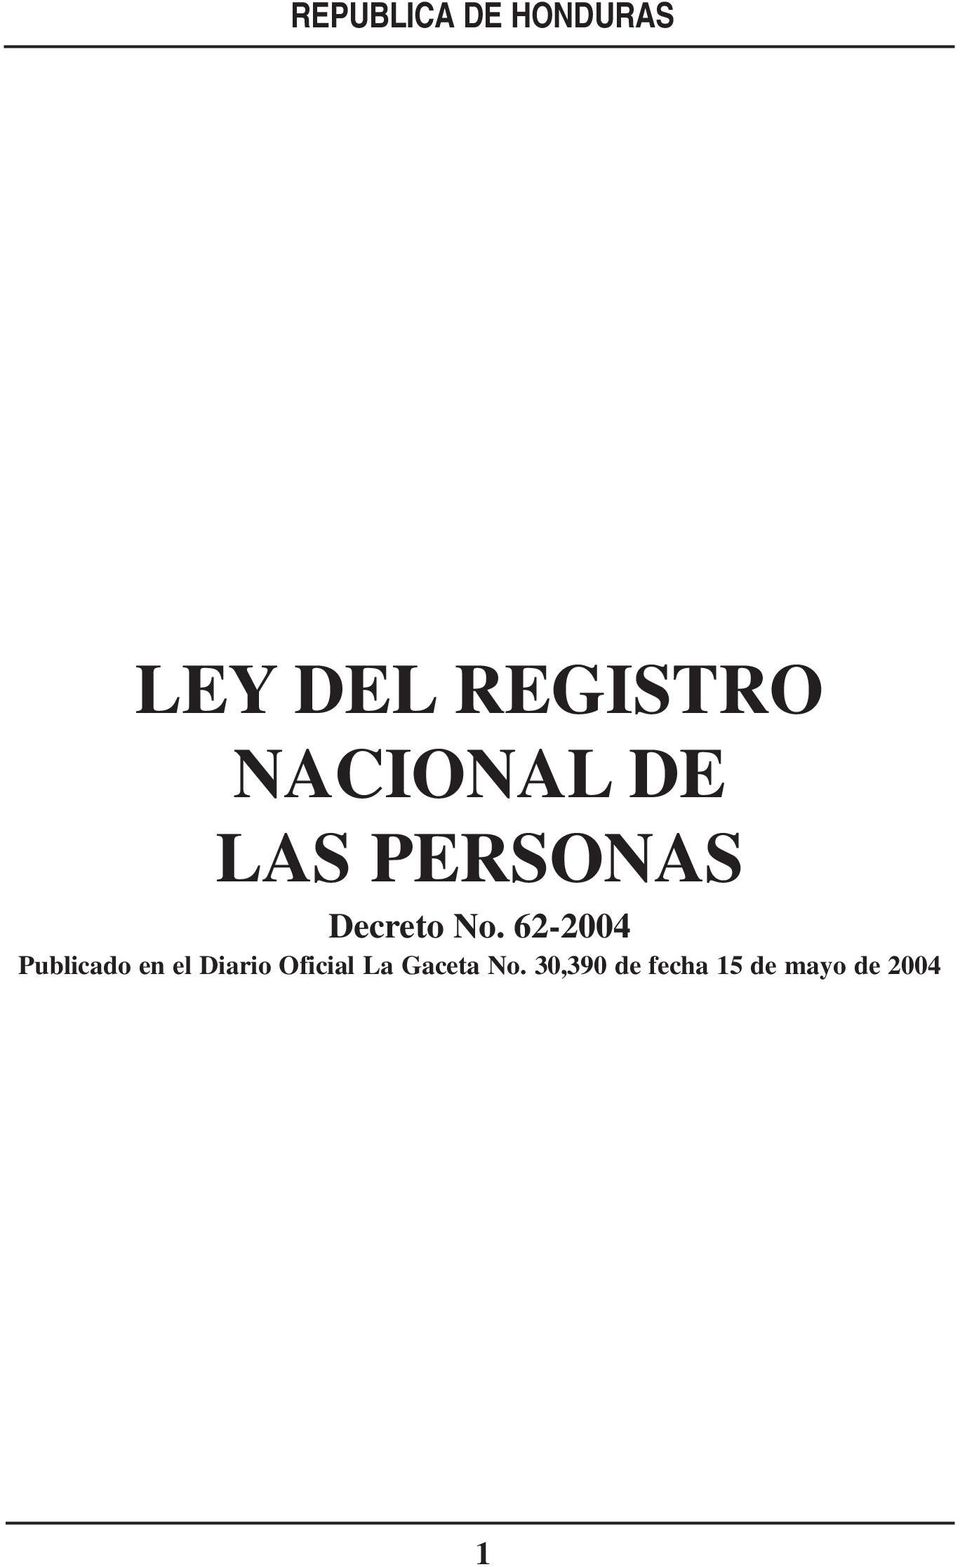 62-2004 Publicado en el Diario Oficial La